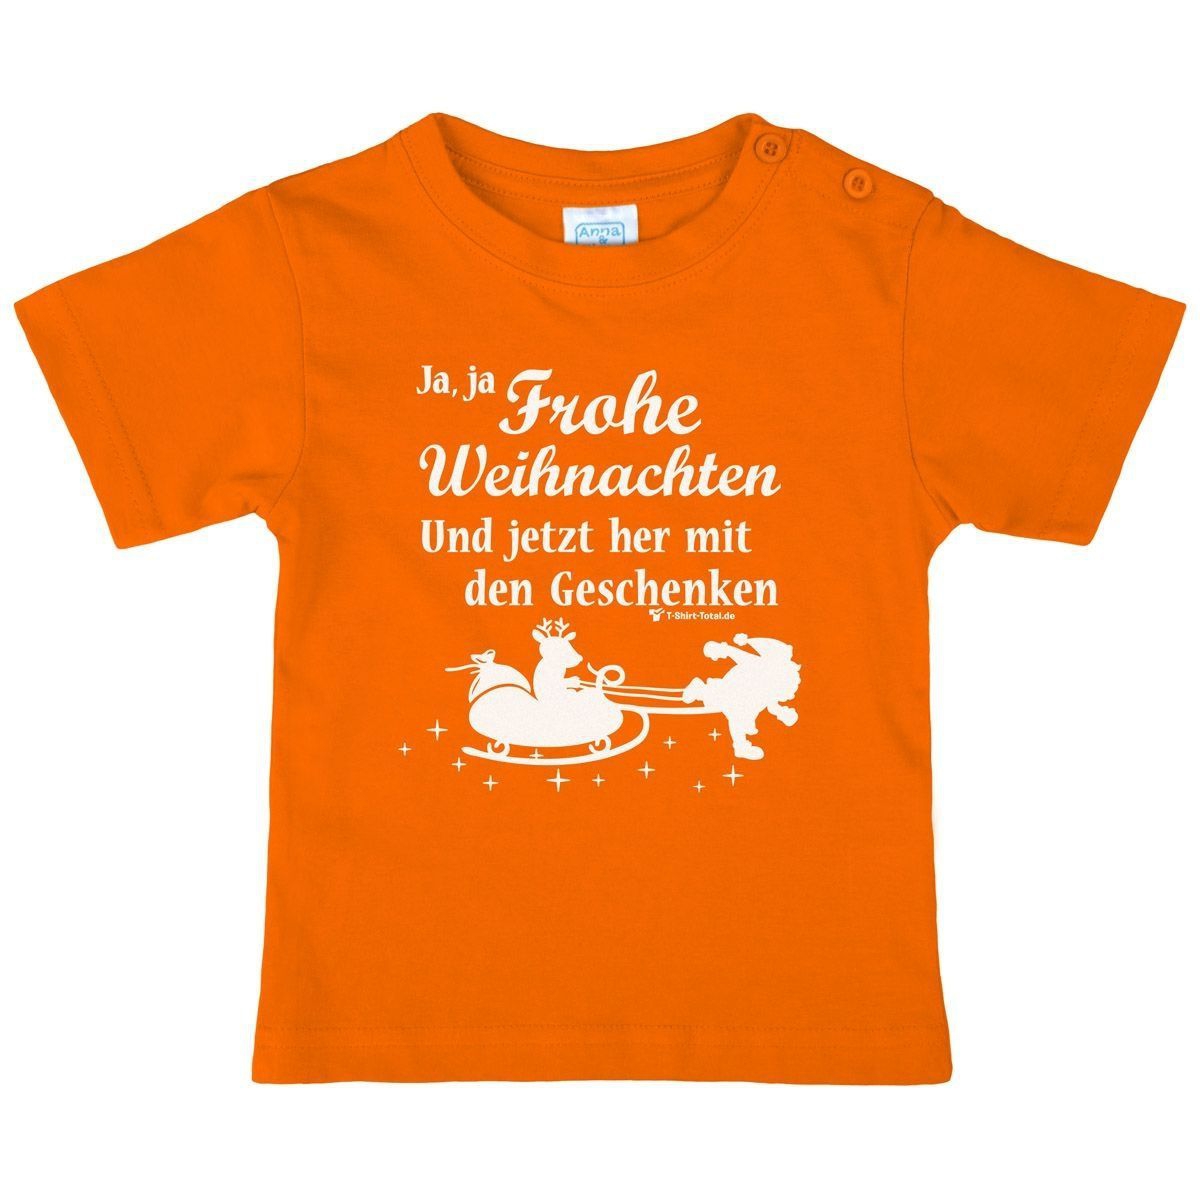 Ja ja Frohe Weihnachten Kinder T-Shirt orange 98